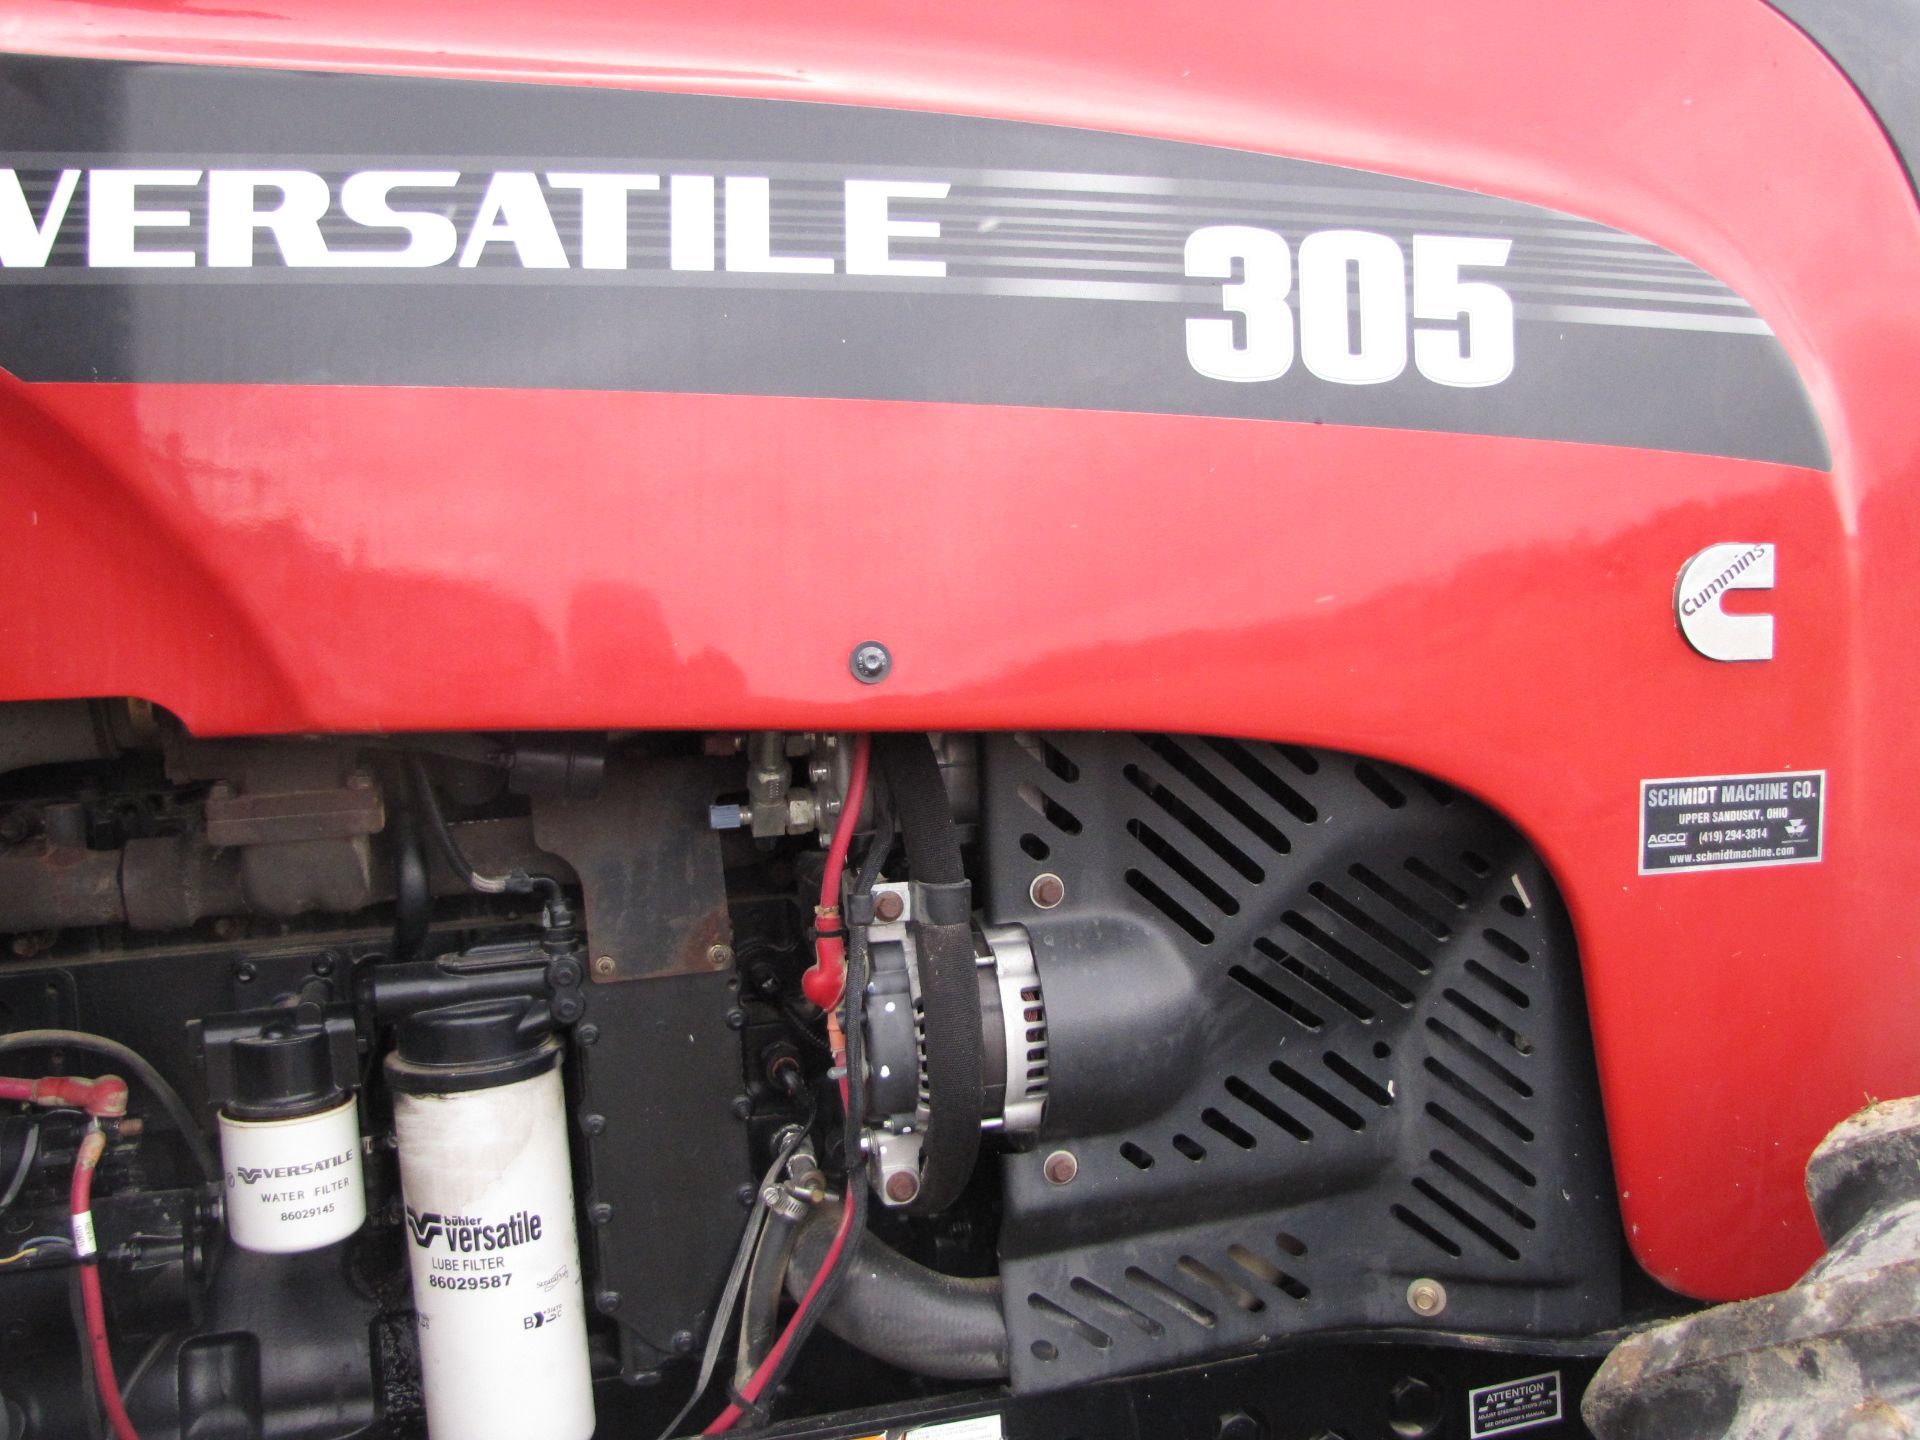 Versatile 305 Tractor - Image 42 of 60